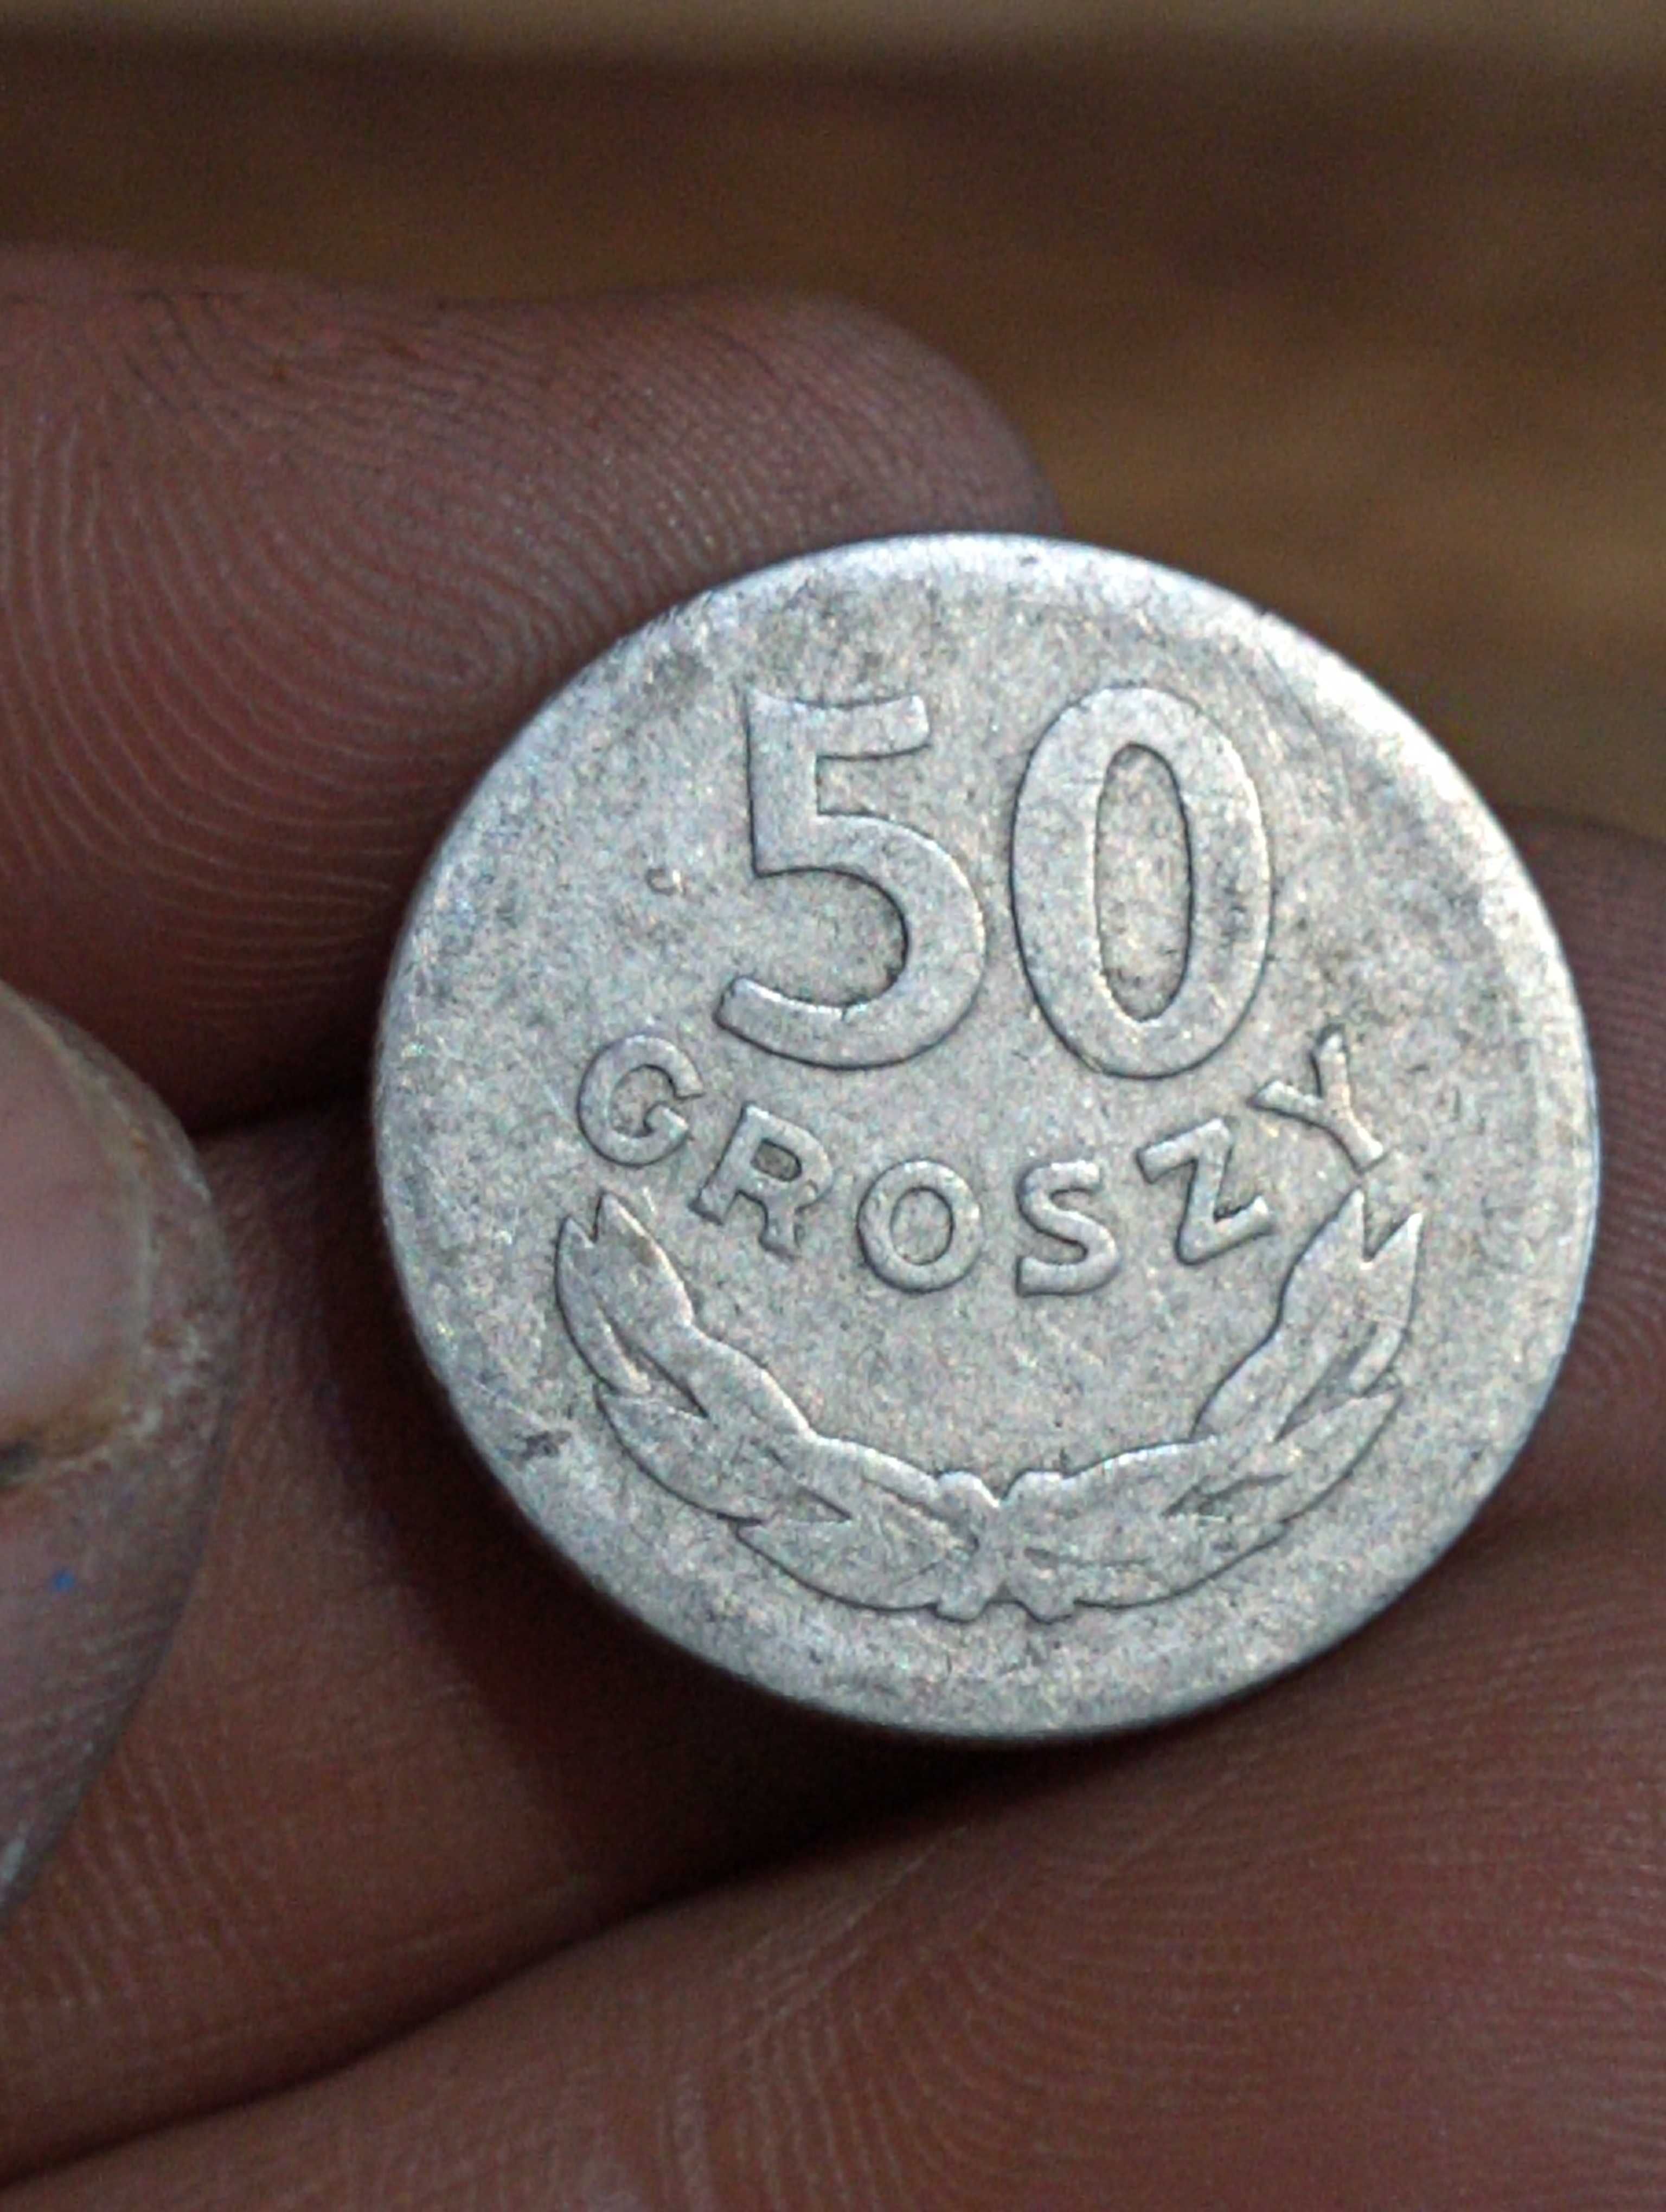 Sprzedam monete 50 groszy 1949 rok bzm